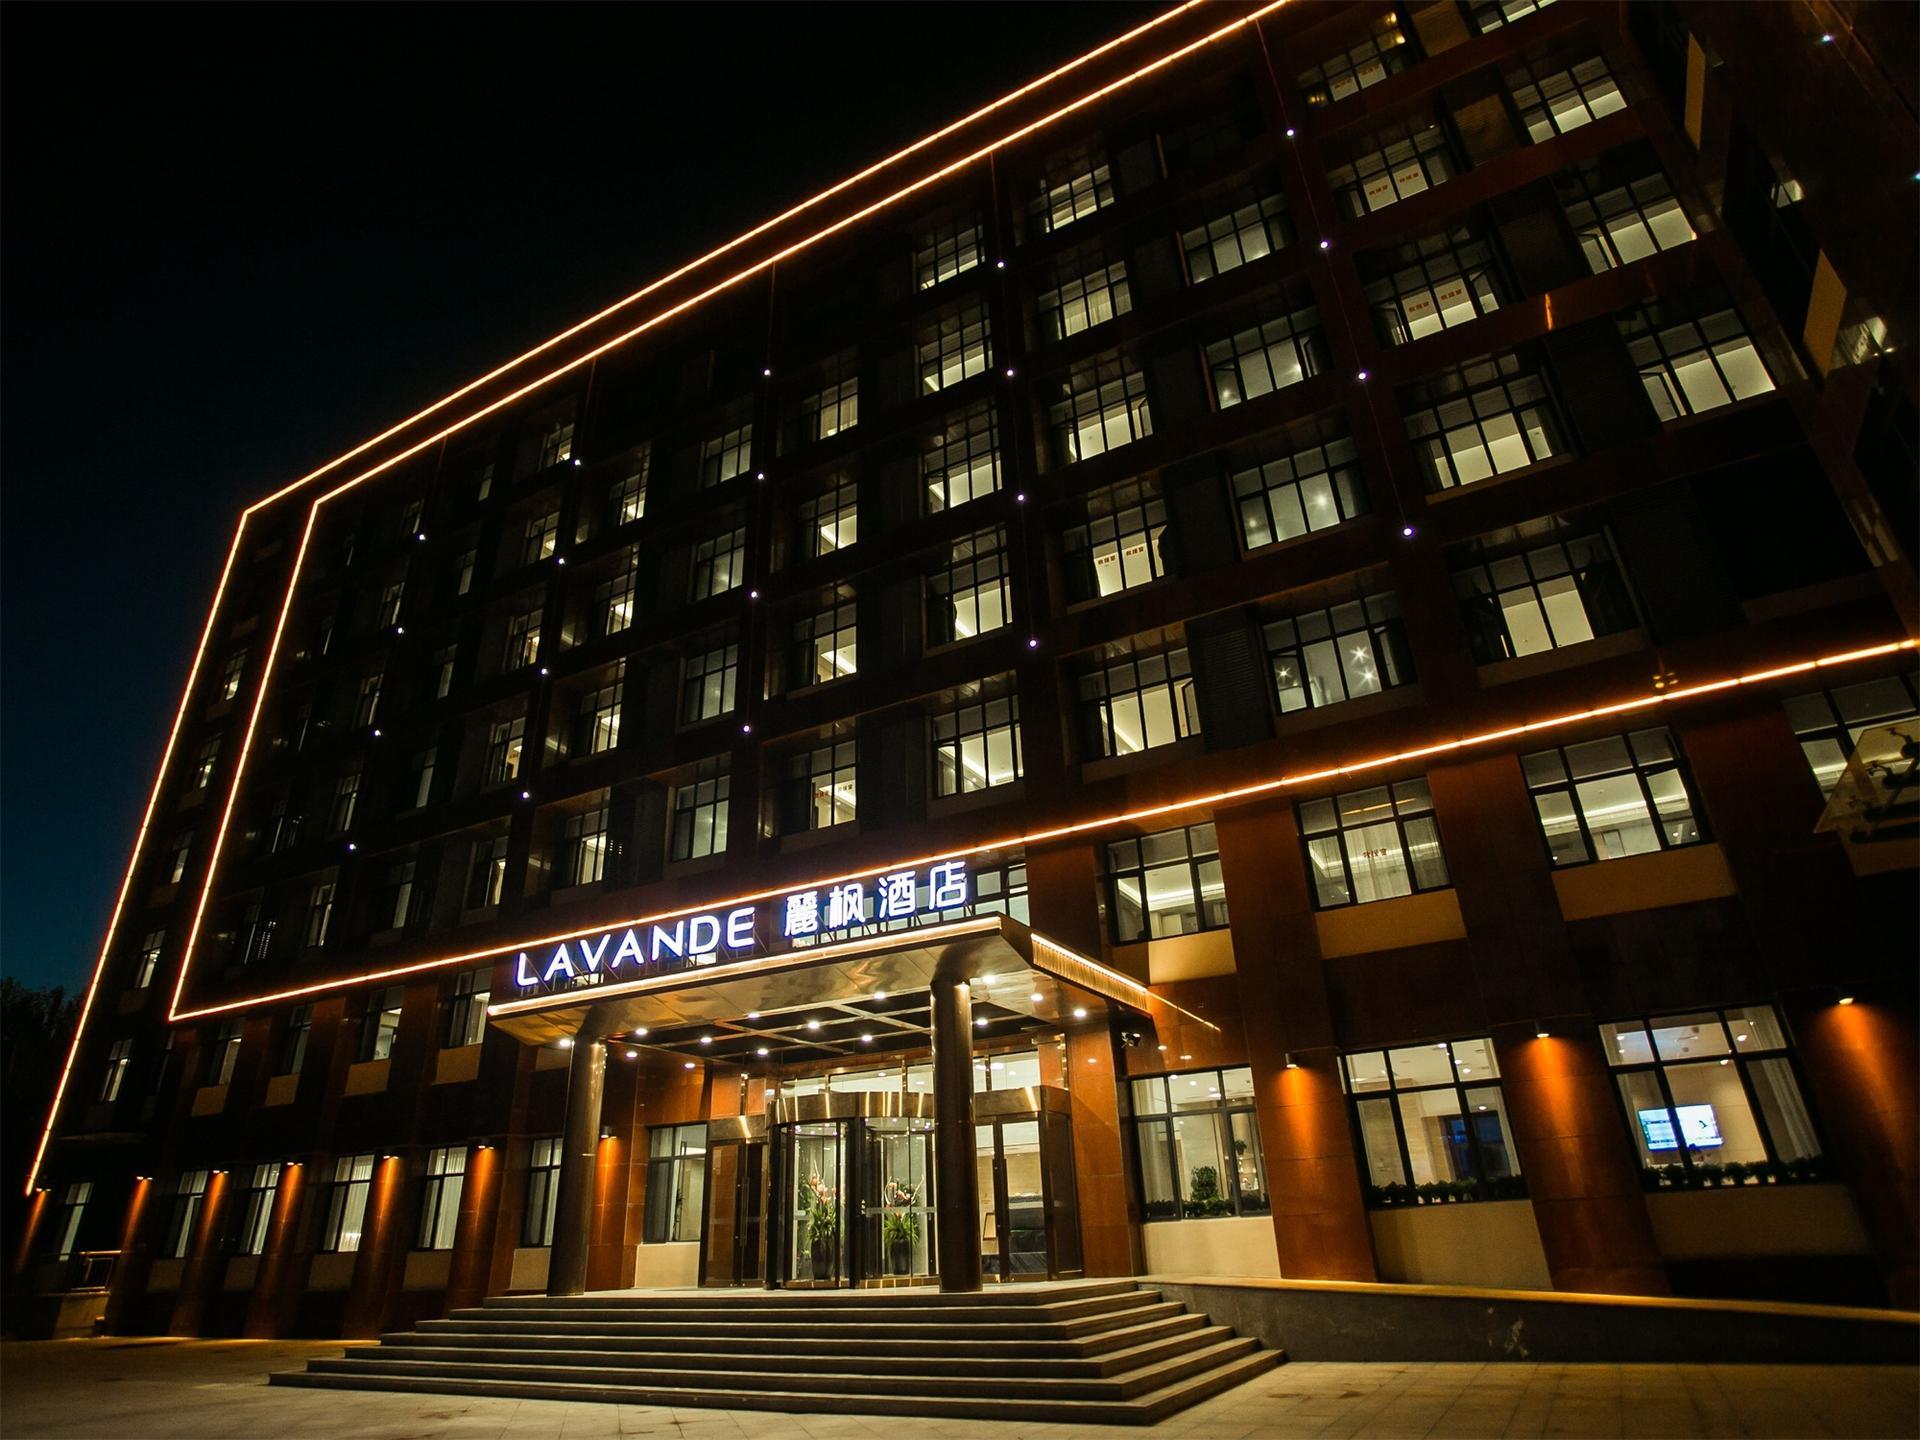 Lavande Hotels Tianjin Wuqing Highspeed ​​Railway Station Daguangming Center - Tianjin - China Hotels